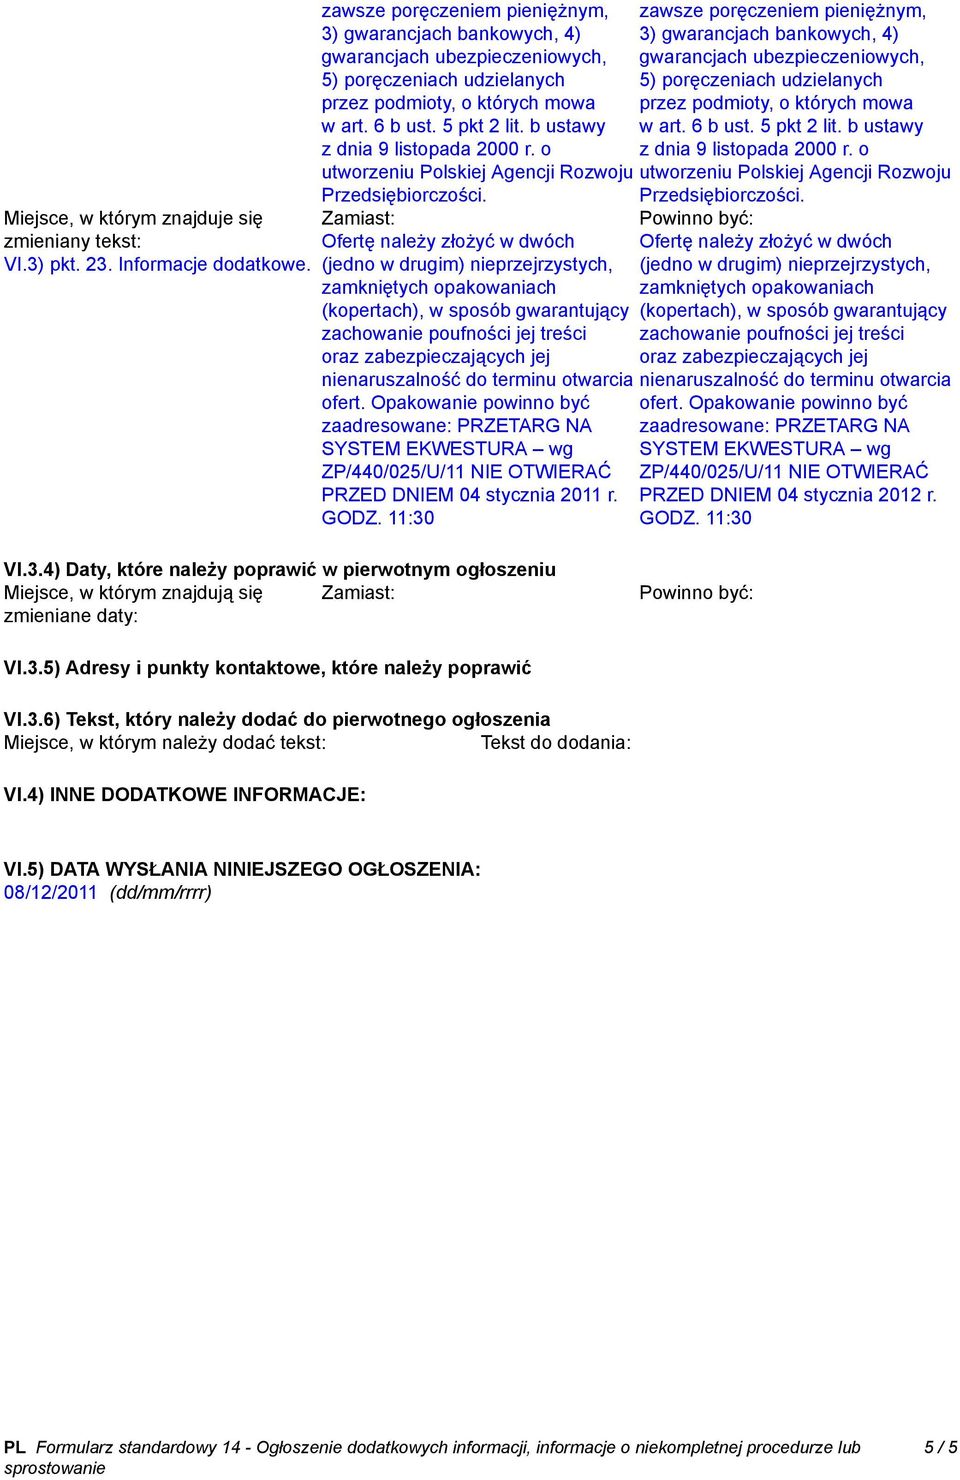 b ustawy z dnia 9 listopada 2000 r. o utworzeniu Polskiej Agencji Rozwoju Przedsiębiorczości.